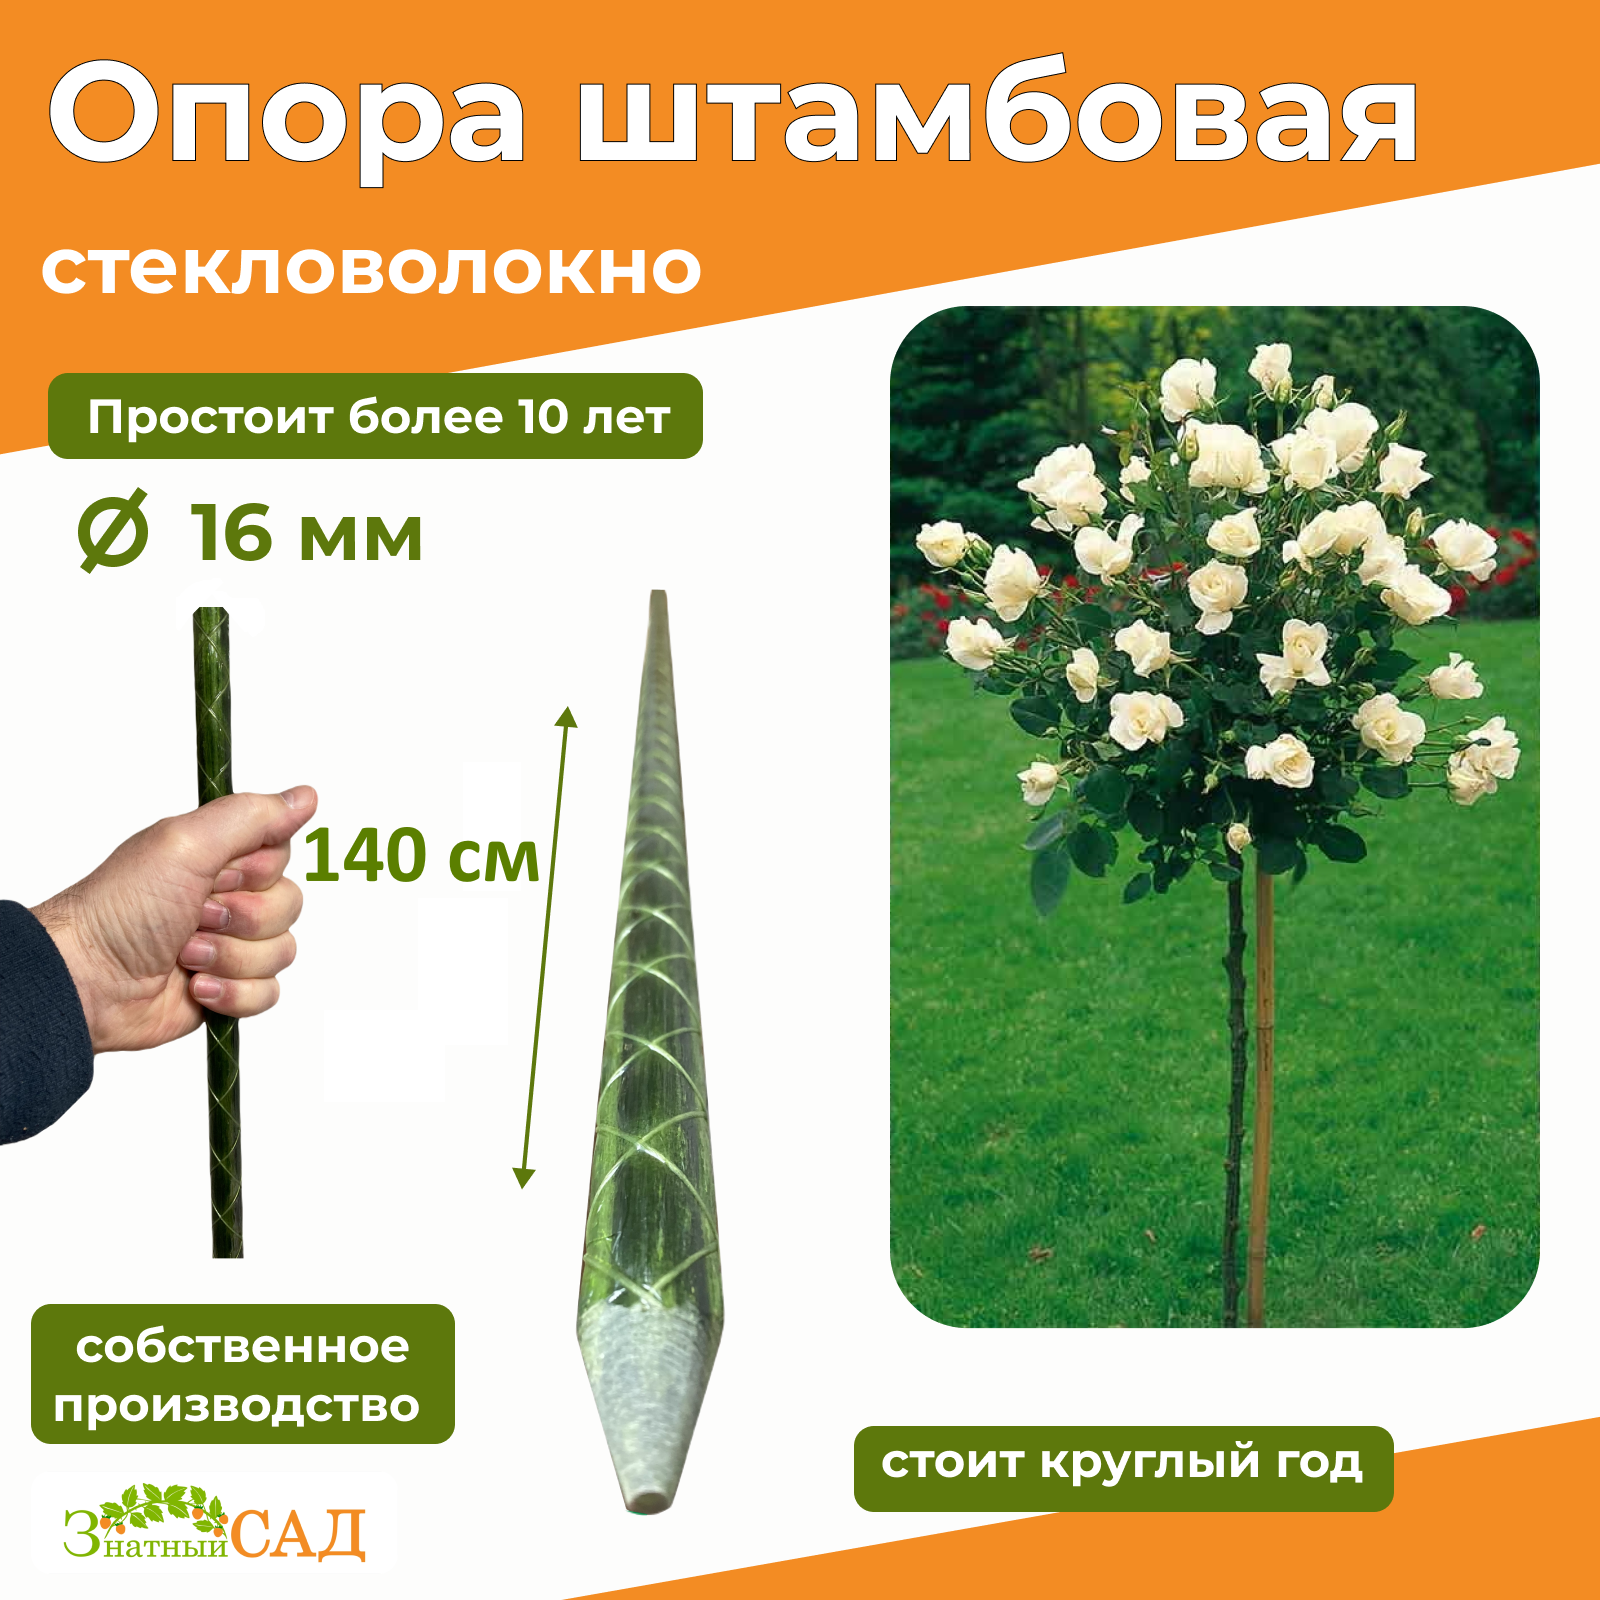 Опора для амбовых растений "Знатный сад" 14 м/диаметр 16/стекловолокно